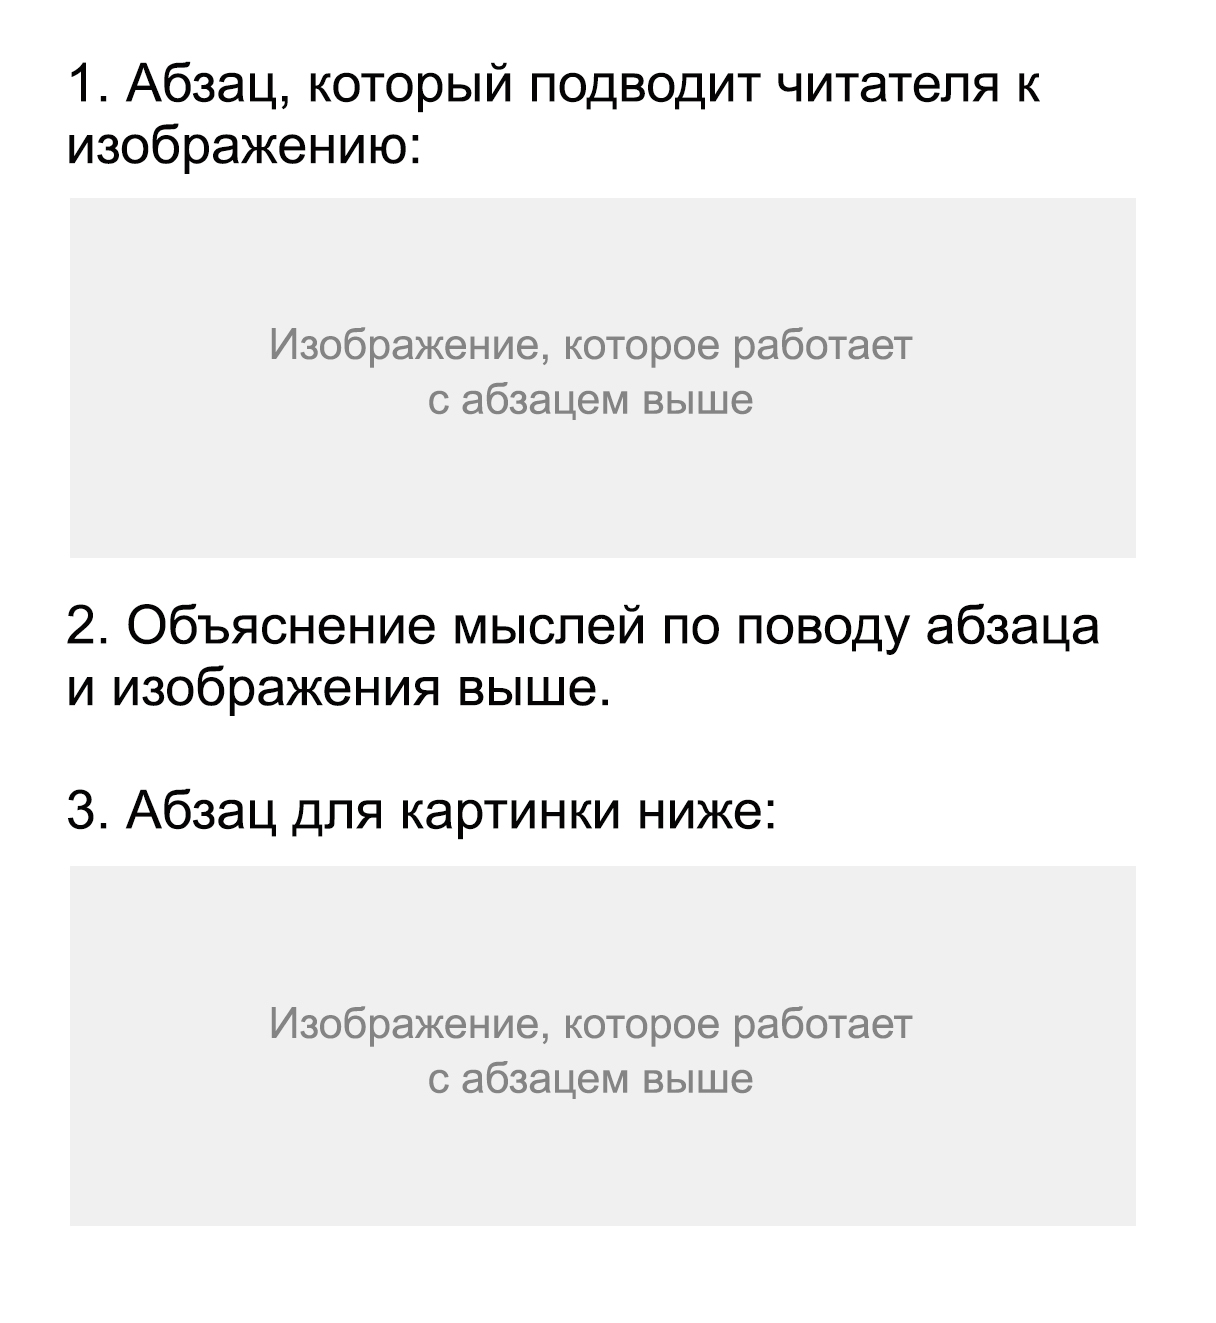 Плохая реклама Яндекс.Дзена